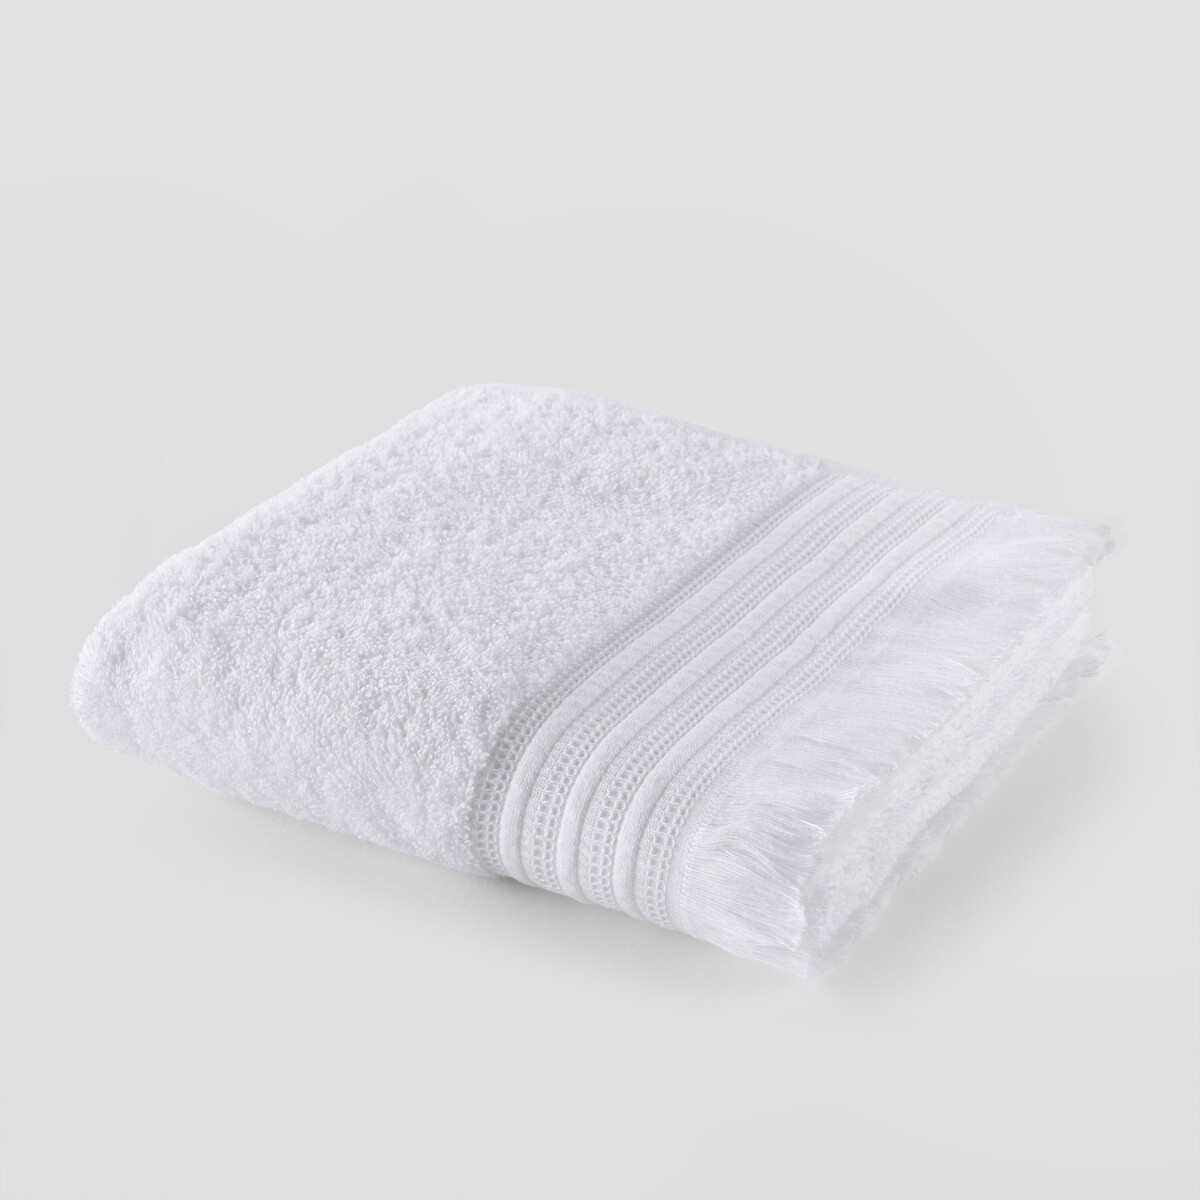 Полотенце LaRedoute Банное из махровой ткани 430г Cabourg 70 x 140 см белый, размер 70 x 140 см - фото 1